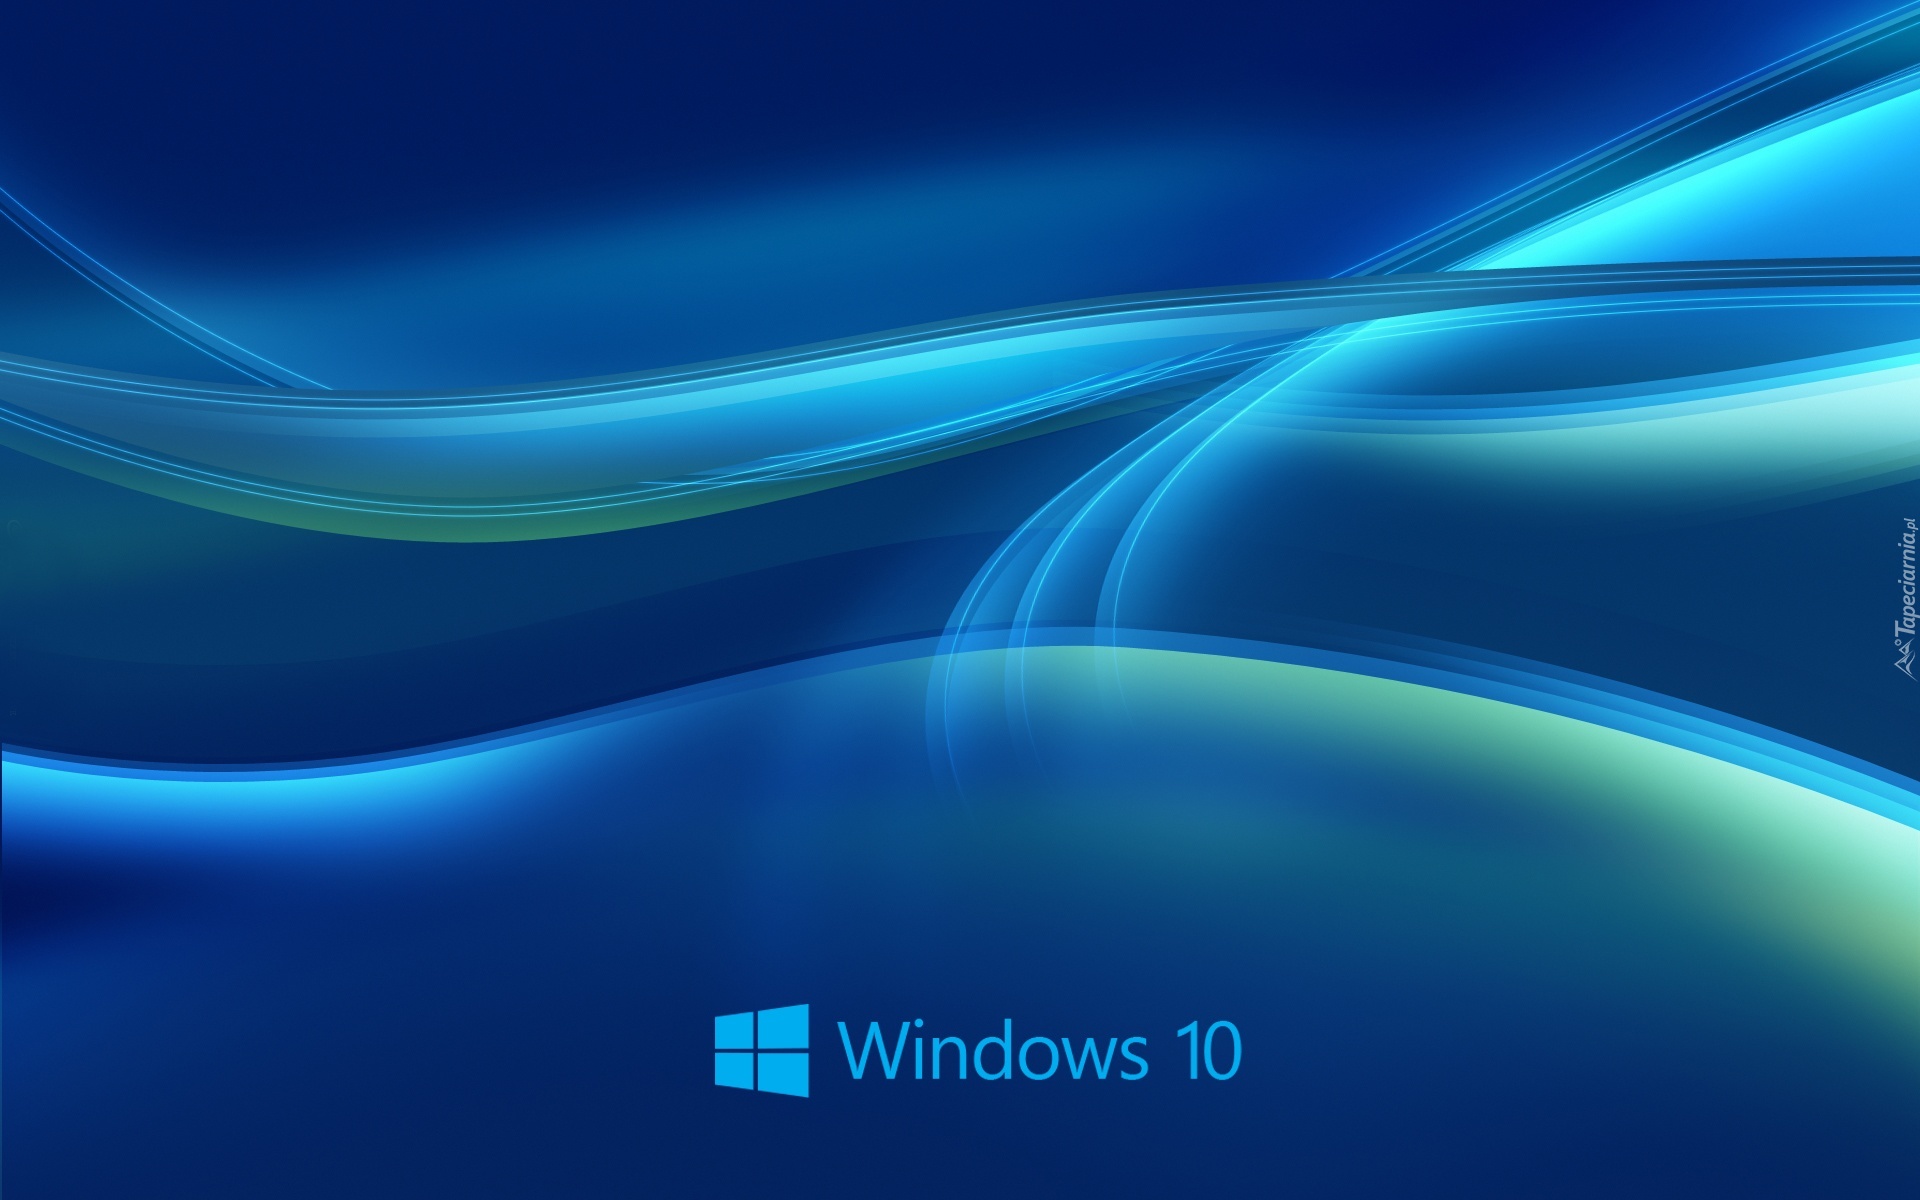 Windows 10, System, Operacyjny, Grafika